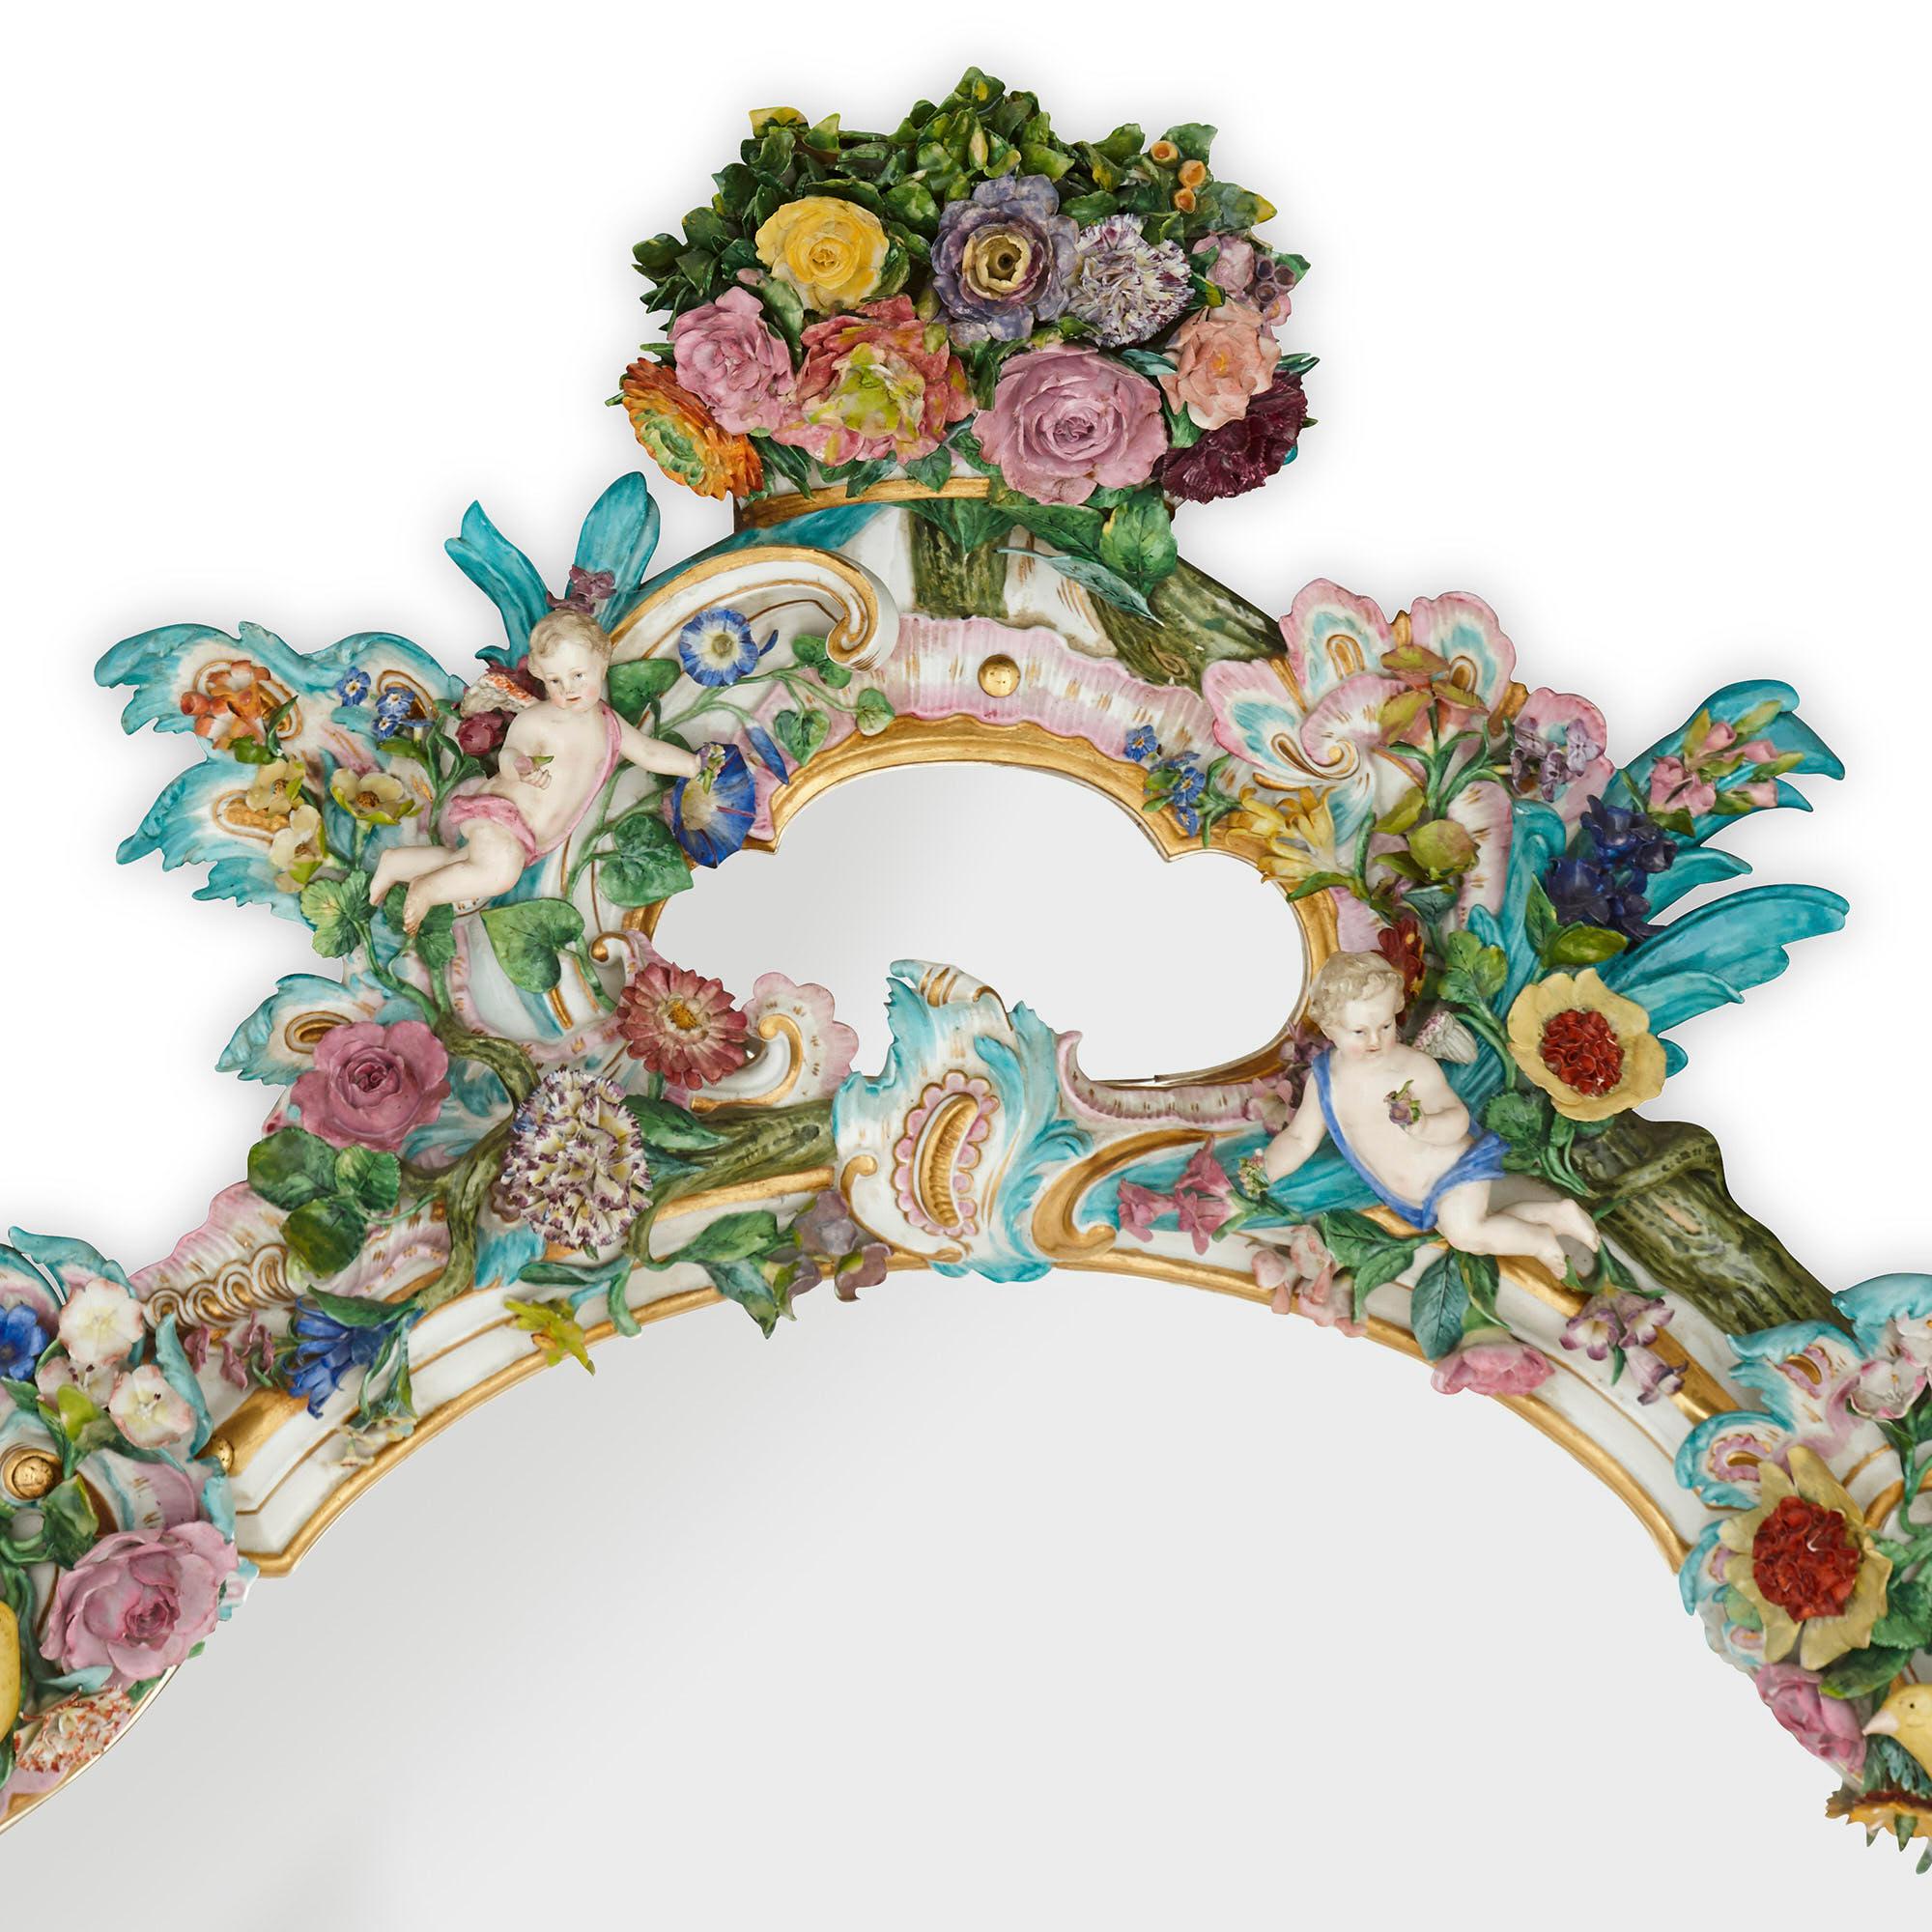 Dieser Spiegel wurde von der berühmten Meissener Porzellanmanufaktur hergestellt:: die 1710 gegründet wurde und von den größten europäischen Adligen gefördert wurde. Er ist mit einem aufwendigen Dekor im Stil des Rokoko versehen. 

Der rechteckige